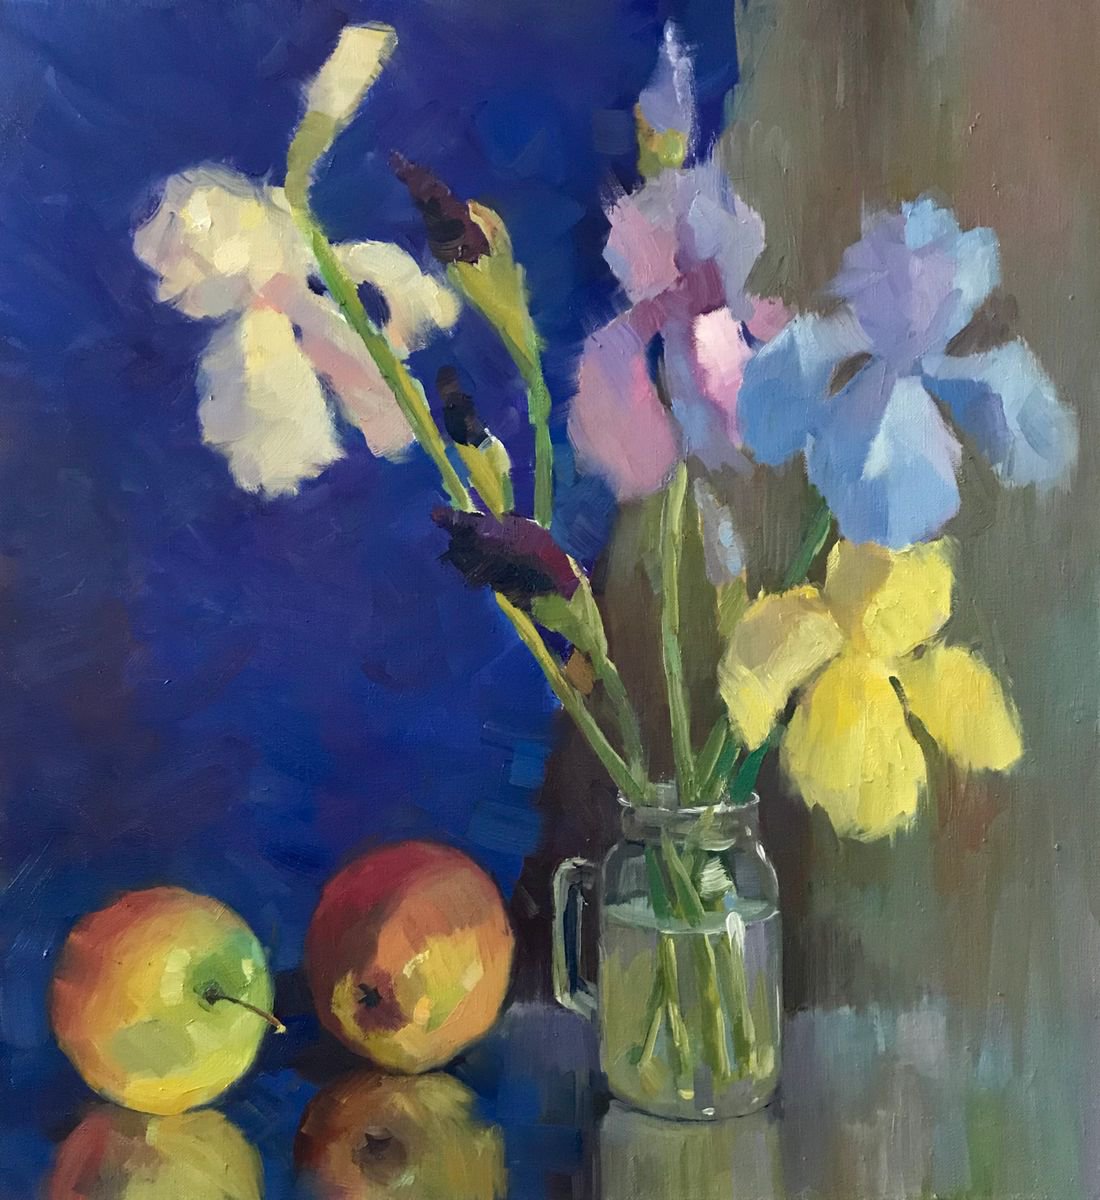 The Irises still life by Andrii Roshkaniuk